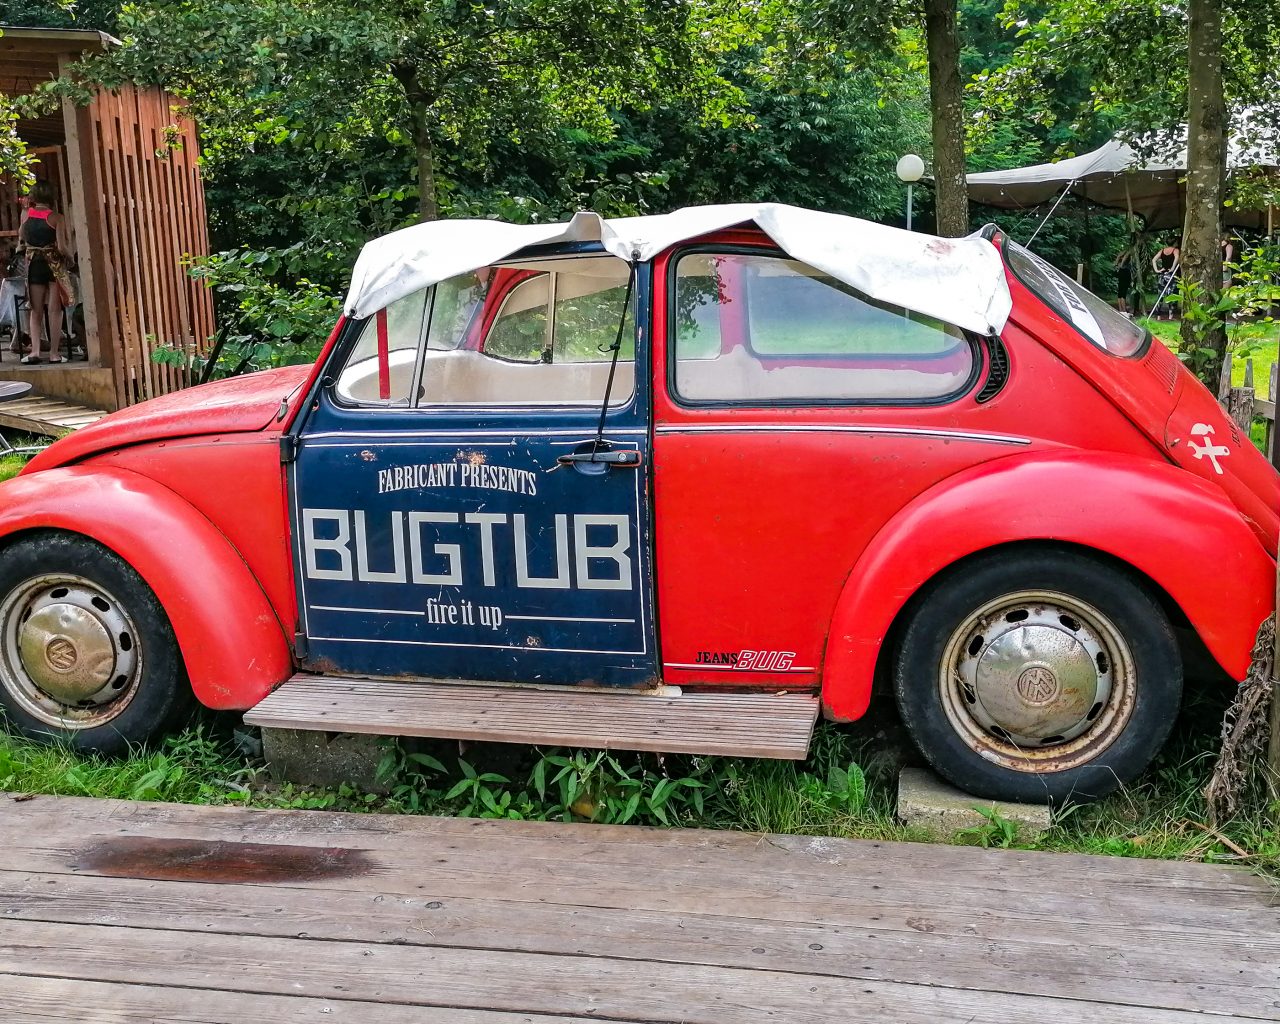 Hottub-in-omgebouwde-auto-camping-Buitenland